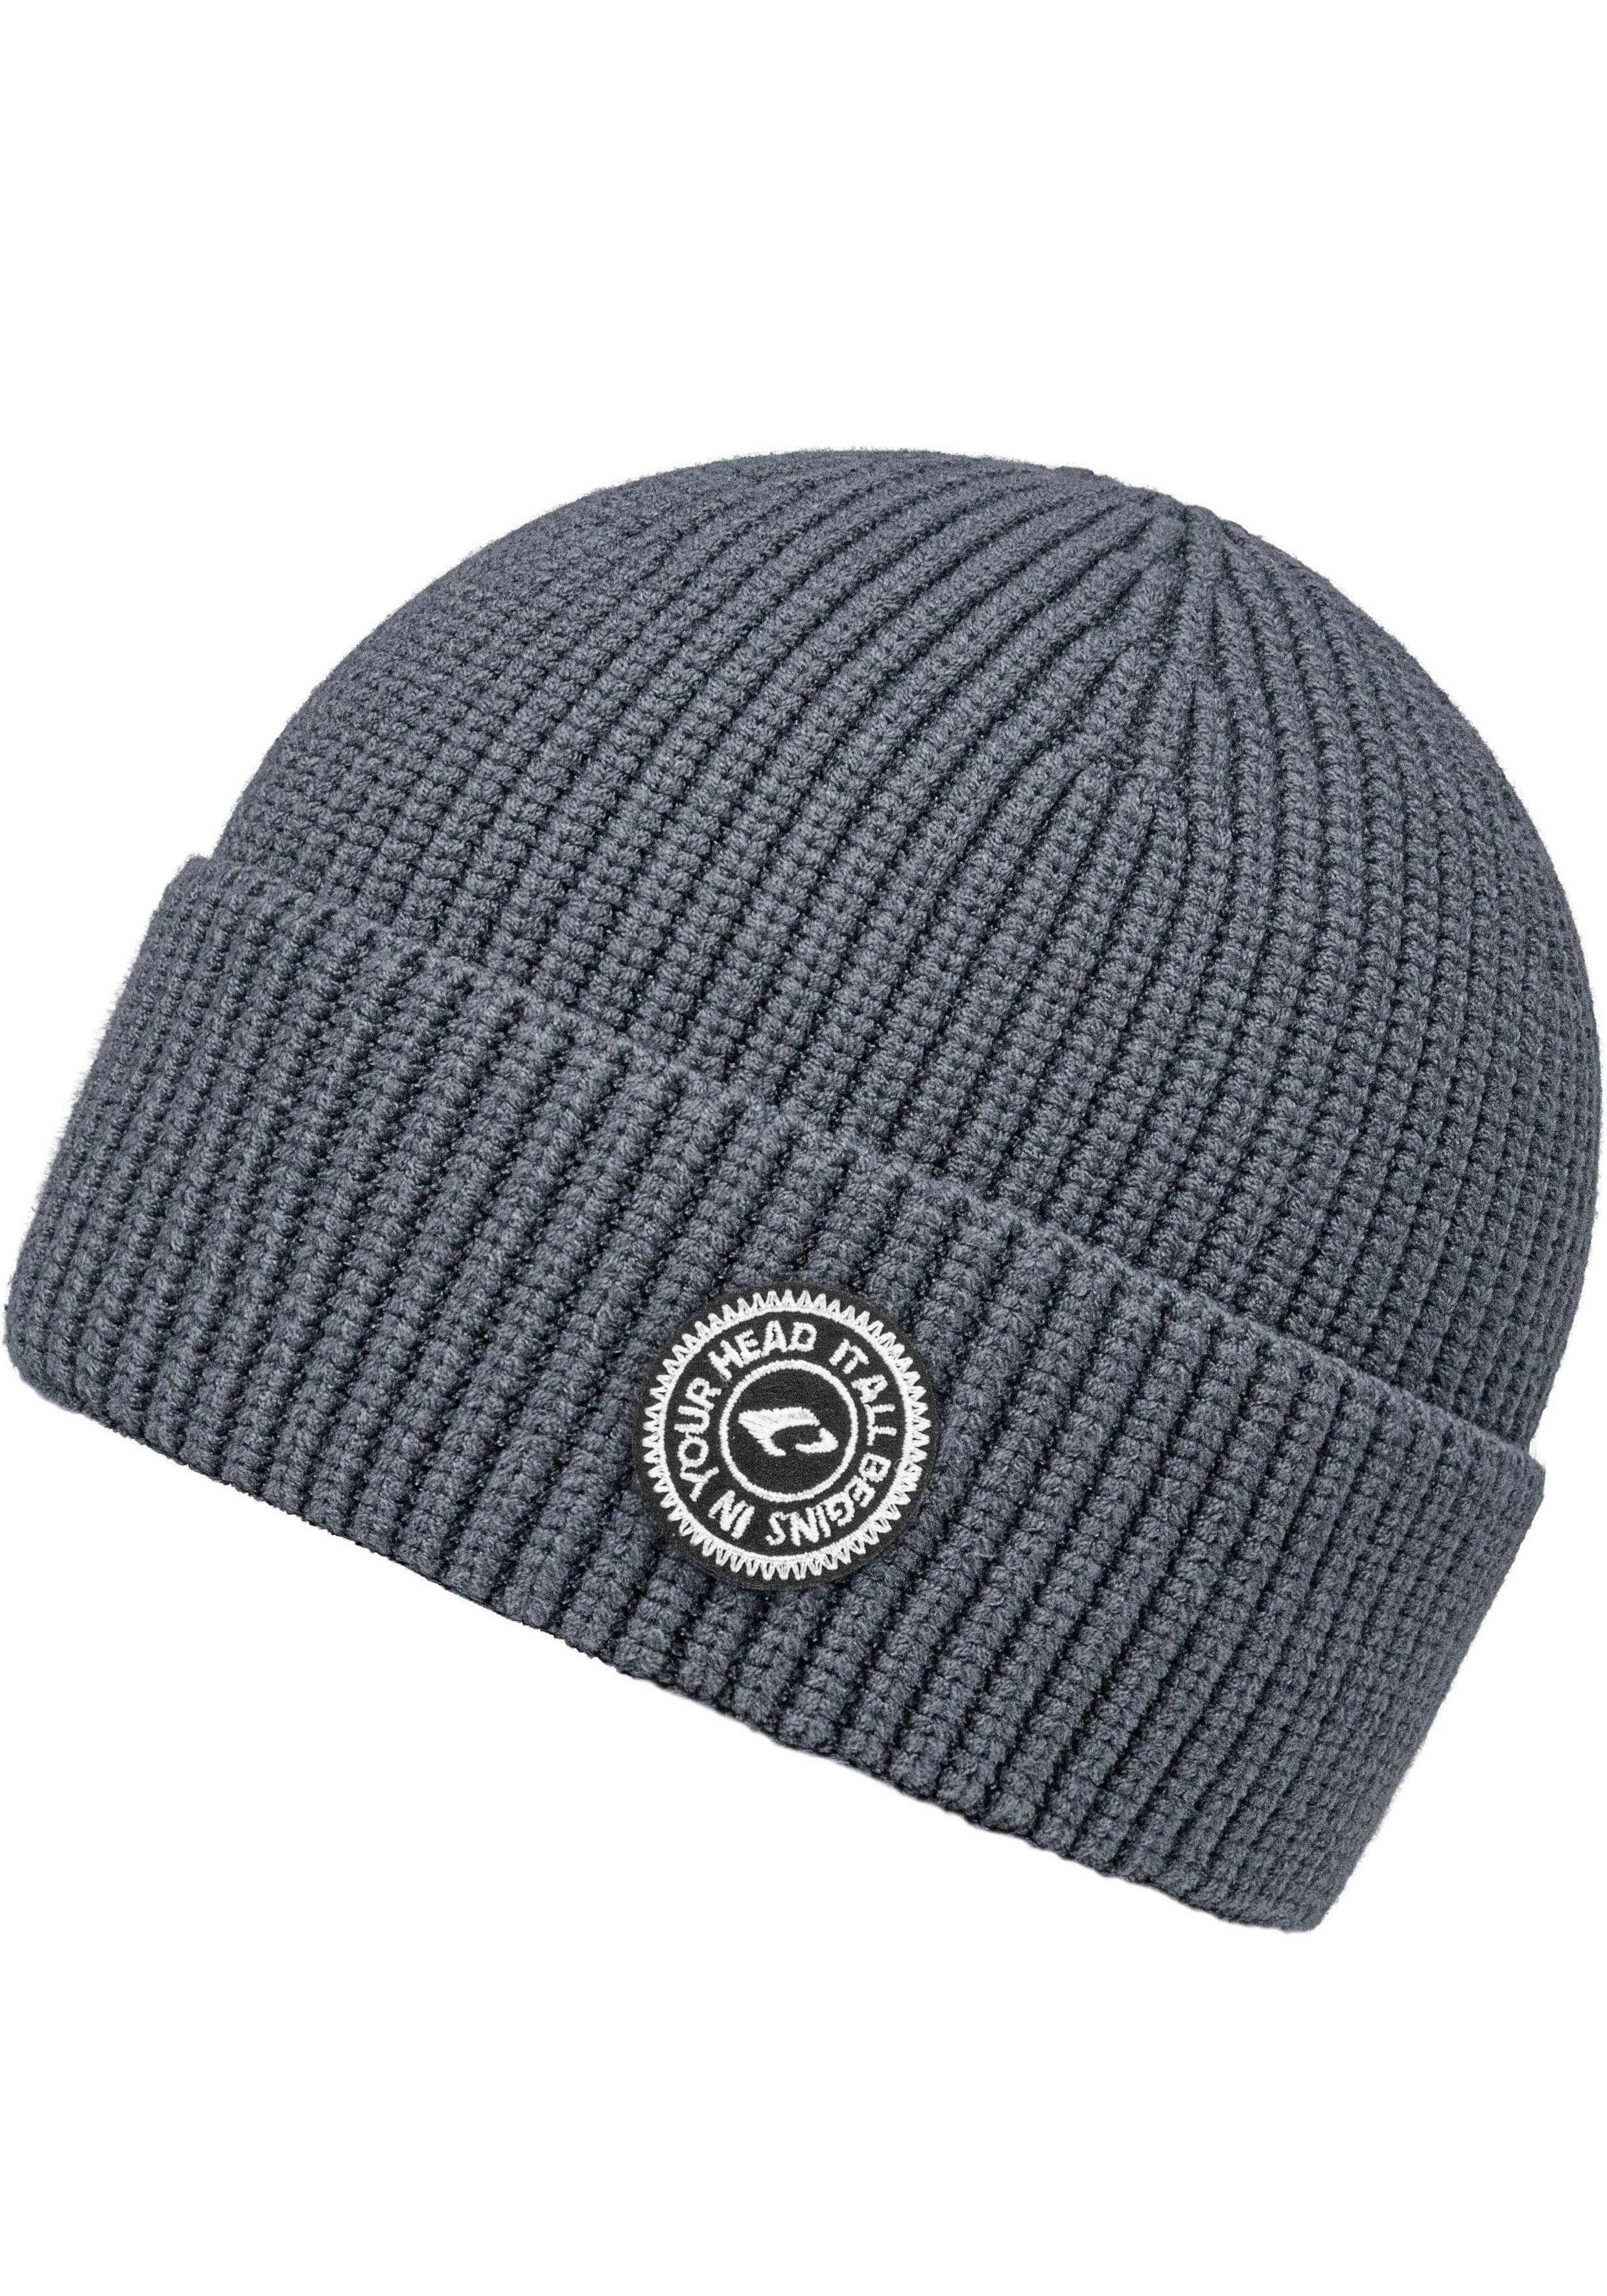 beliebte Wahl chillouts Strickmütze Jayden Hat One Size grey